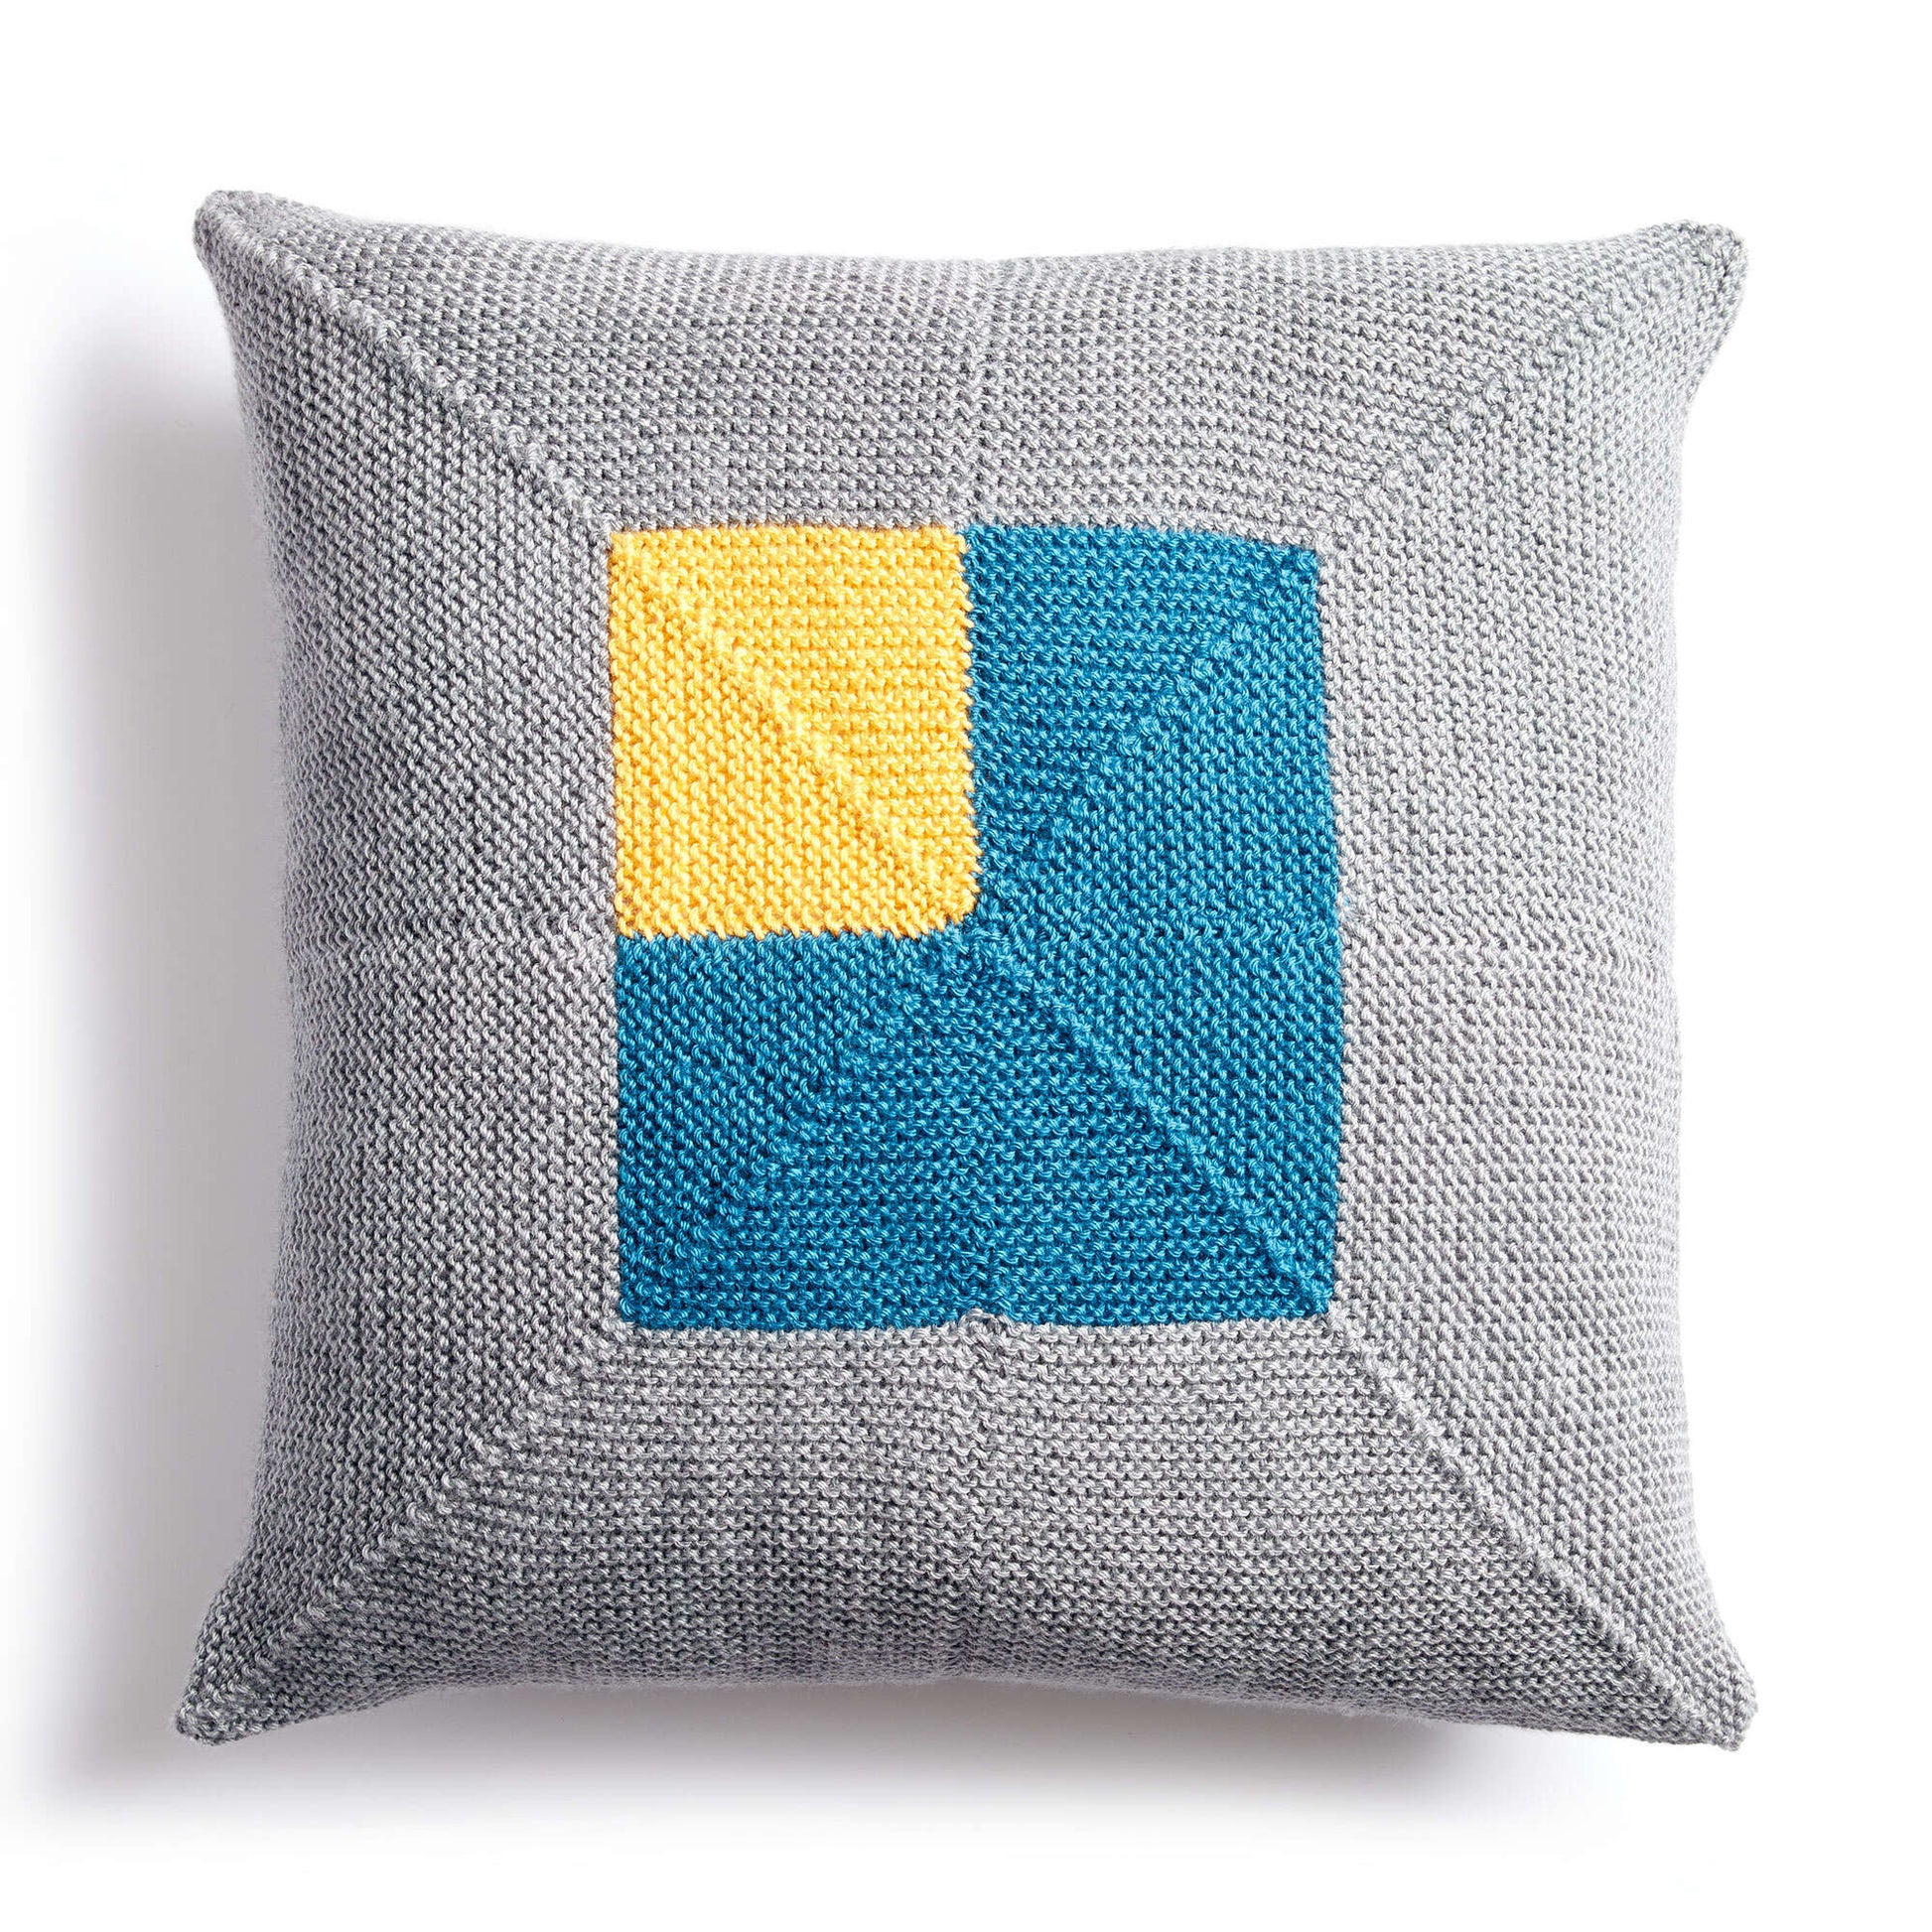 Free Caron Crazy Corners Knit Pillow Pattern